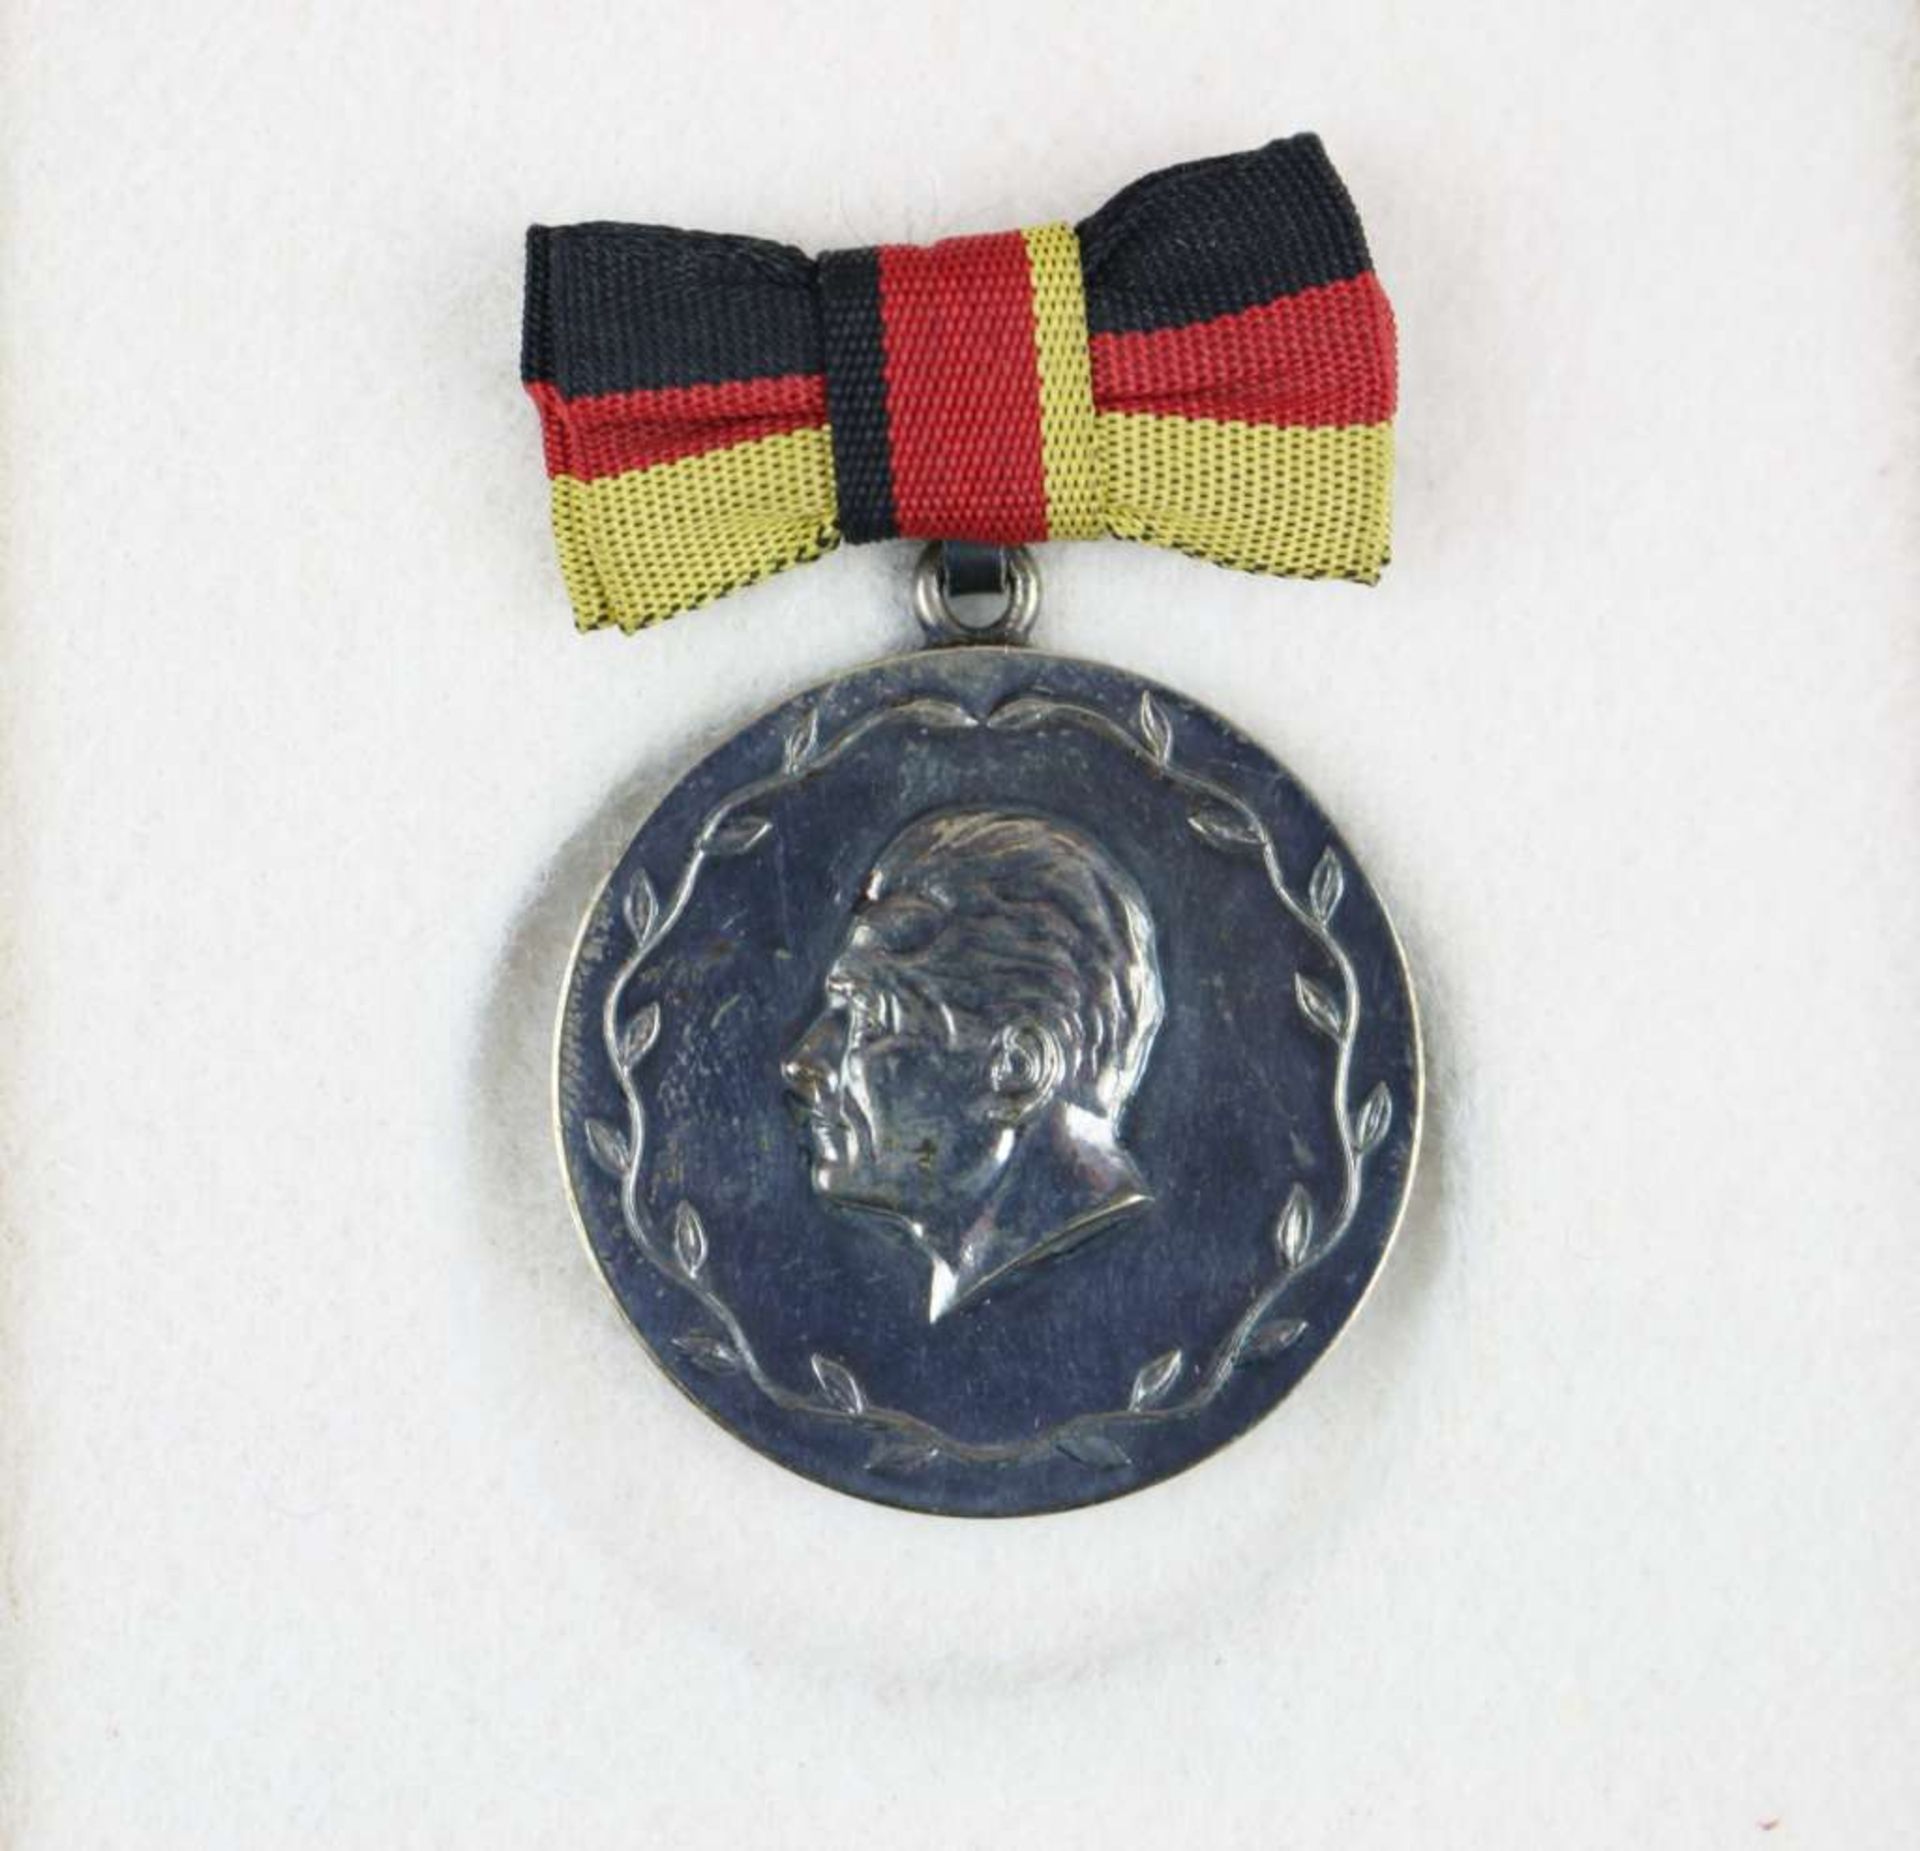 DDR, Medaille Meister des Sports. Verliehen 1955-1970. Silber mit Punze 900 im Rand. Gewicht: c - Bild 2 aus 2